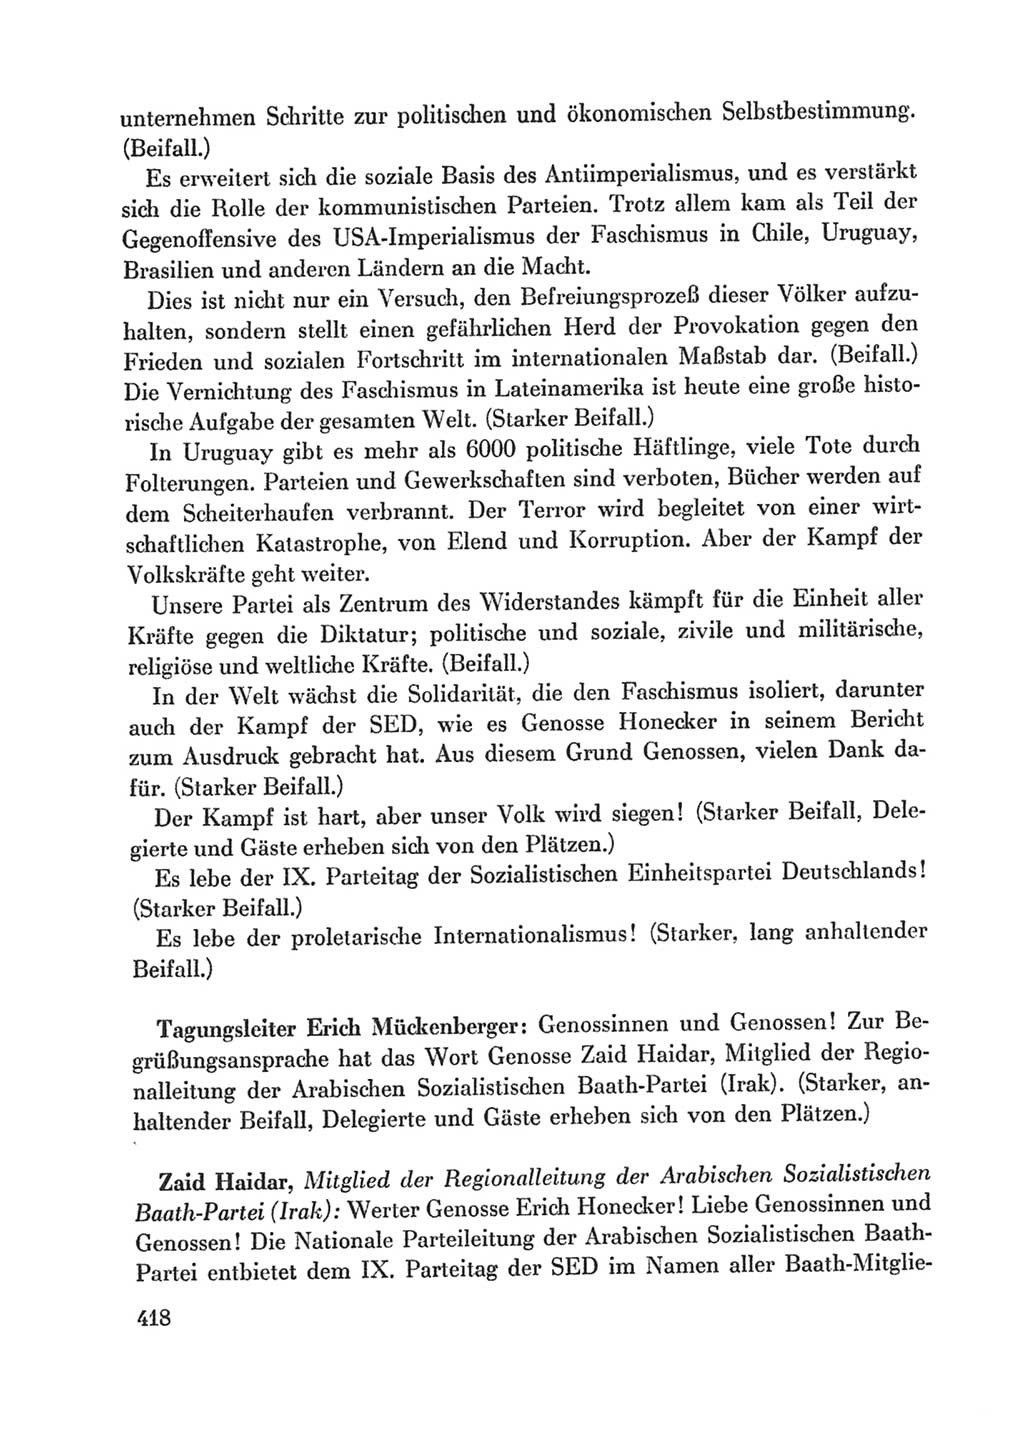 Protokoll der Verhandlungen des Ⅸ. Parteitages der Sozialistischen Einheitspartei Deutschlands (SED) [Deutsche Demokratische Republik (DDR)] 1976, Band 1, Seite 418 (Prot. Verh. Ⅸ. PT SED DDR 1976, Bd. 1, S. 418)